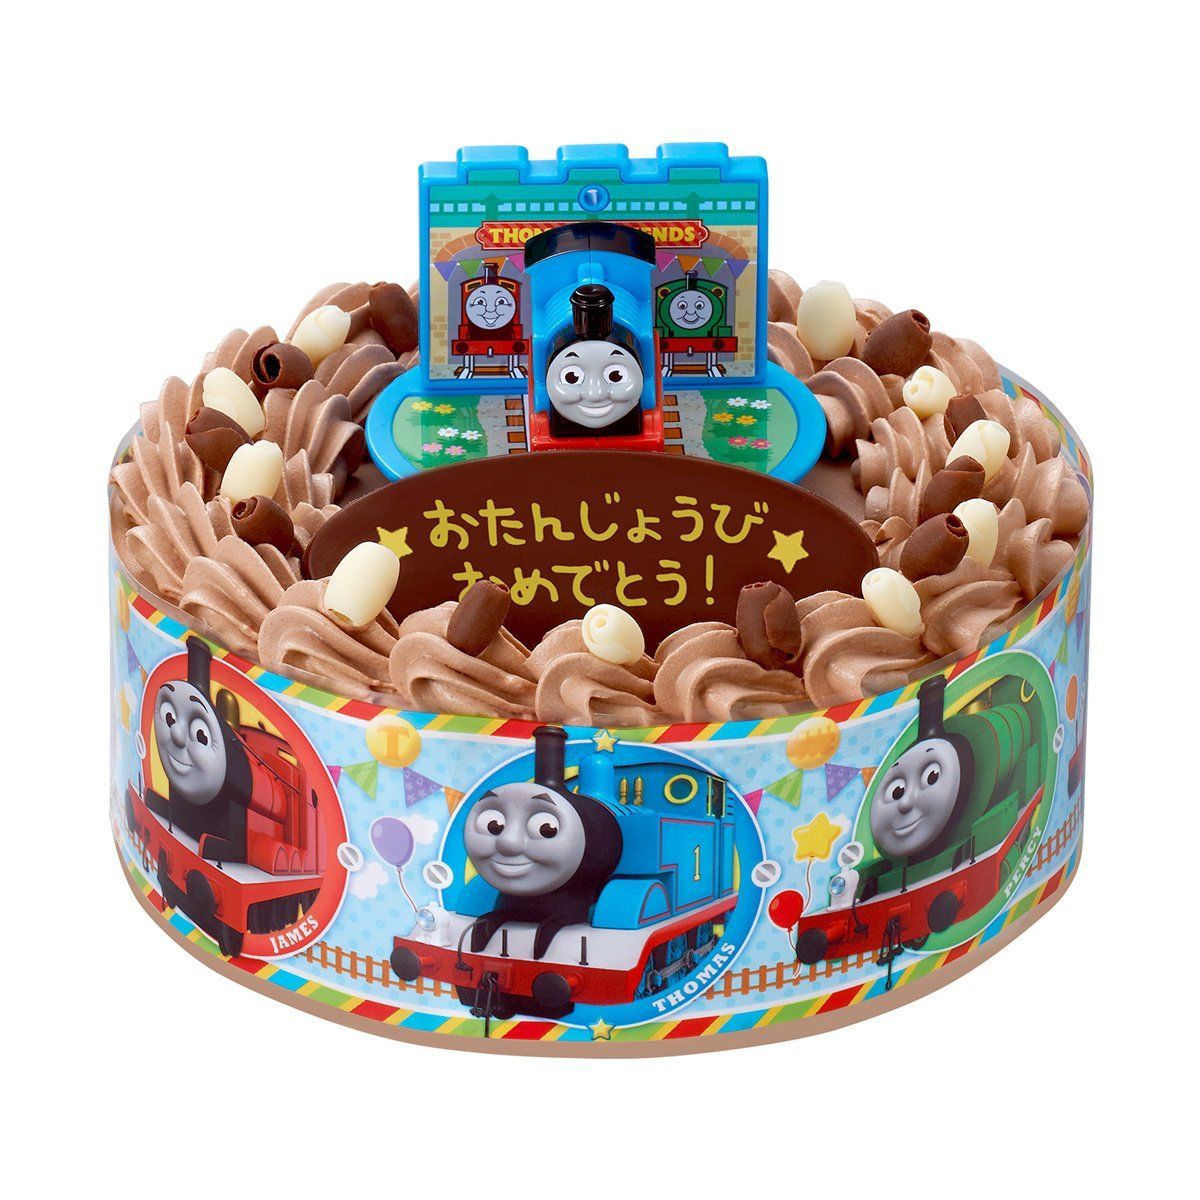 キャラデコお祝いケーキ きかんしゃトーマス チョコ 5号サイズ おもちゃ バンダイナムコグループ公式通販サイト